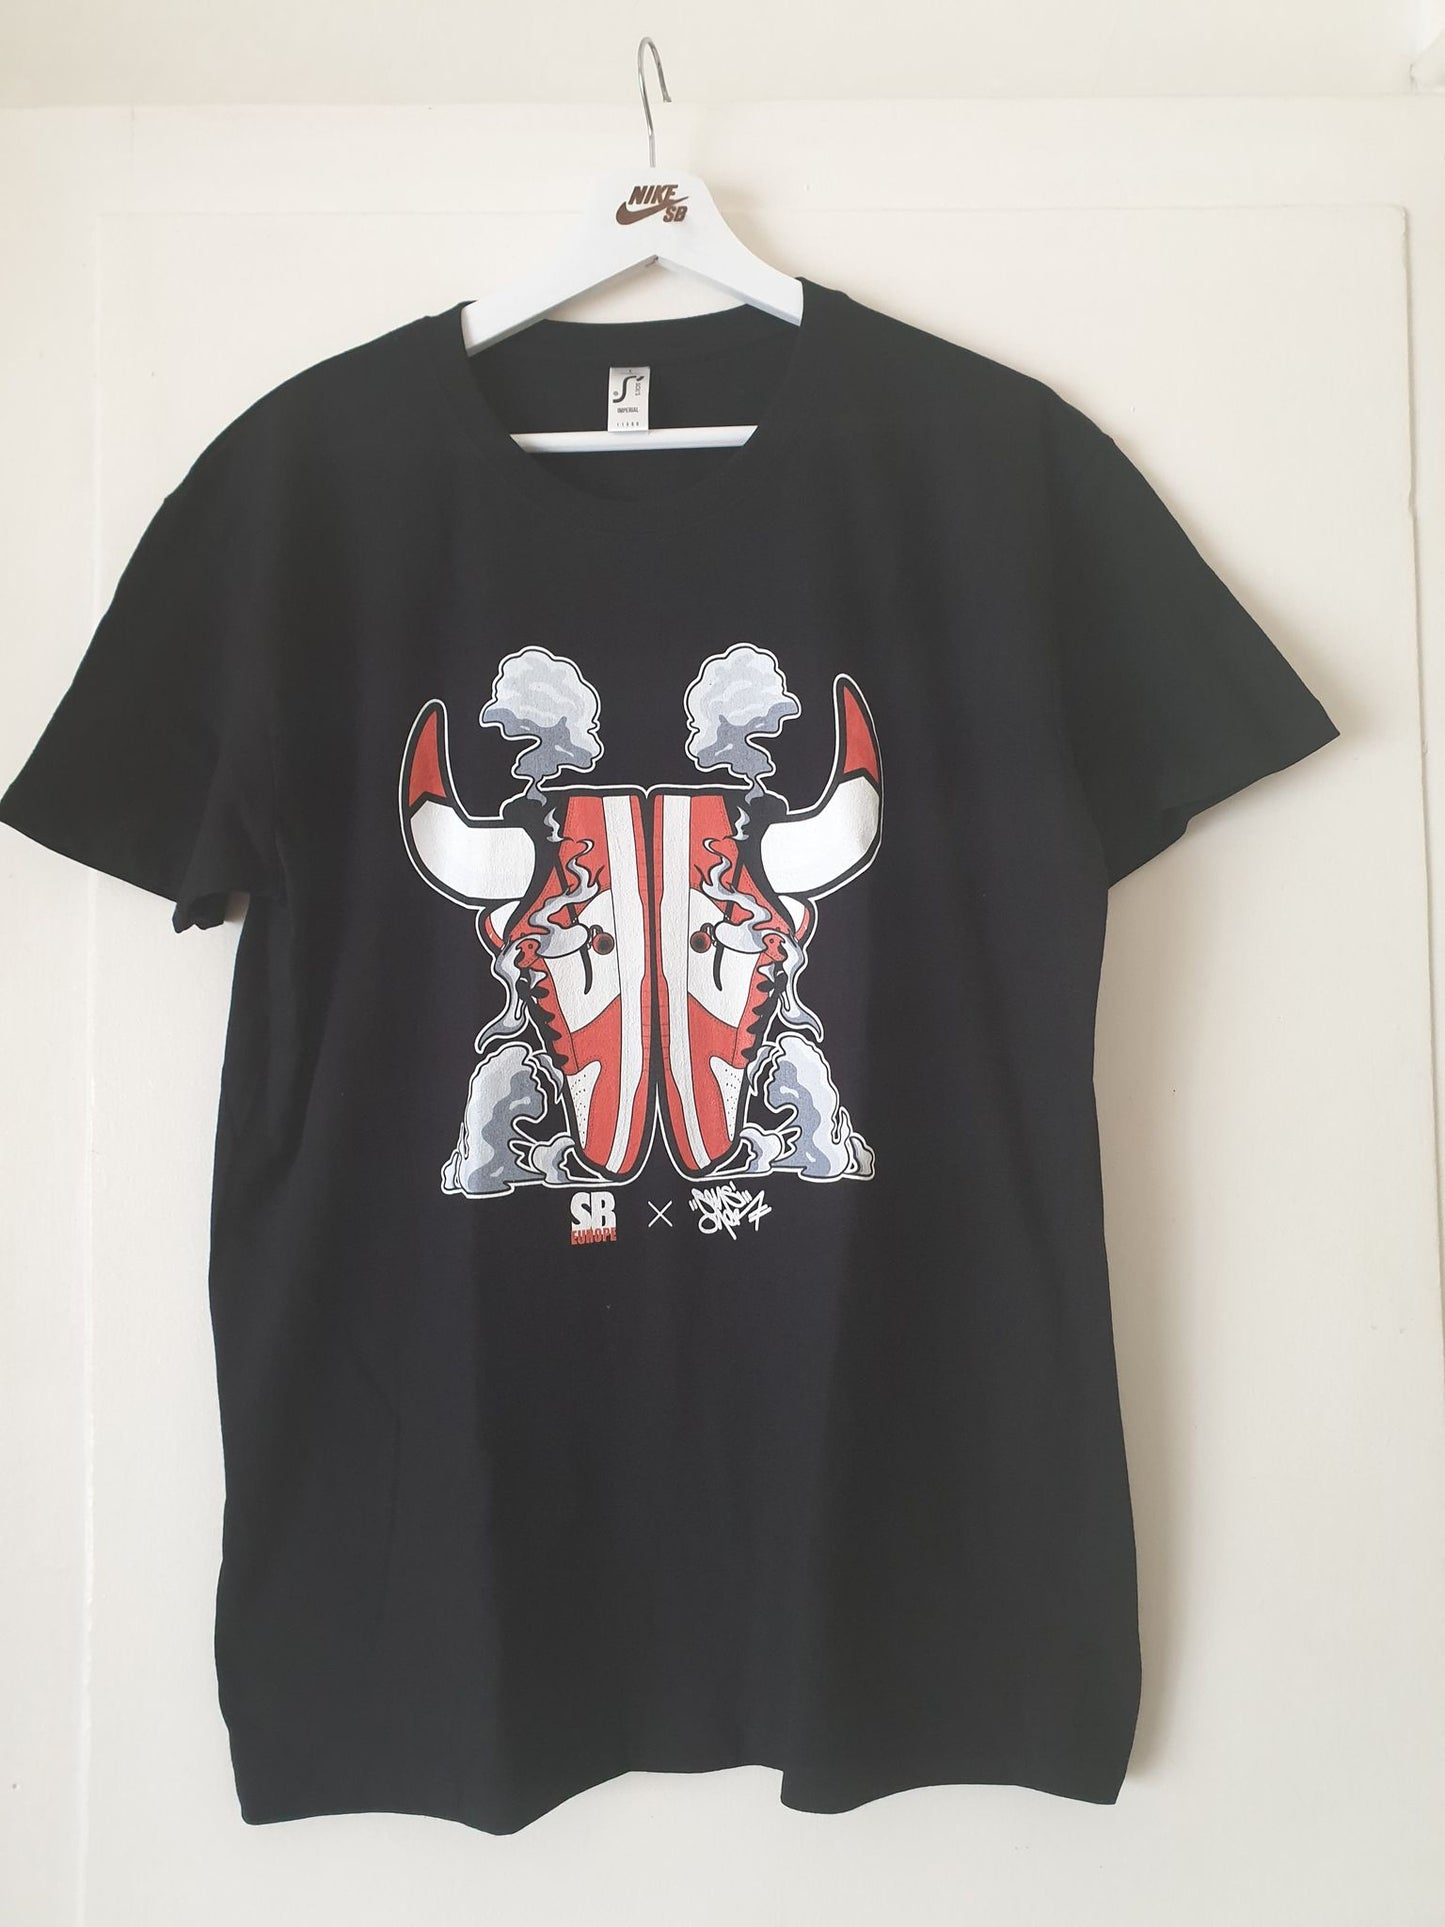 BullSkate (Cup + T-shirt Pack)